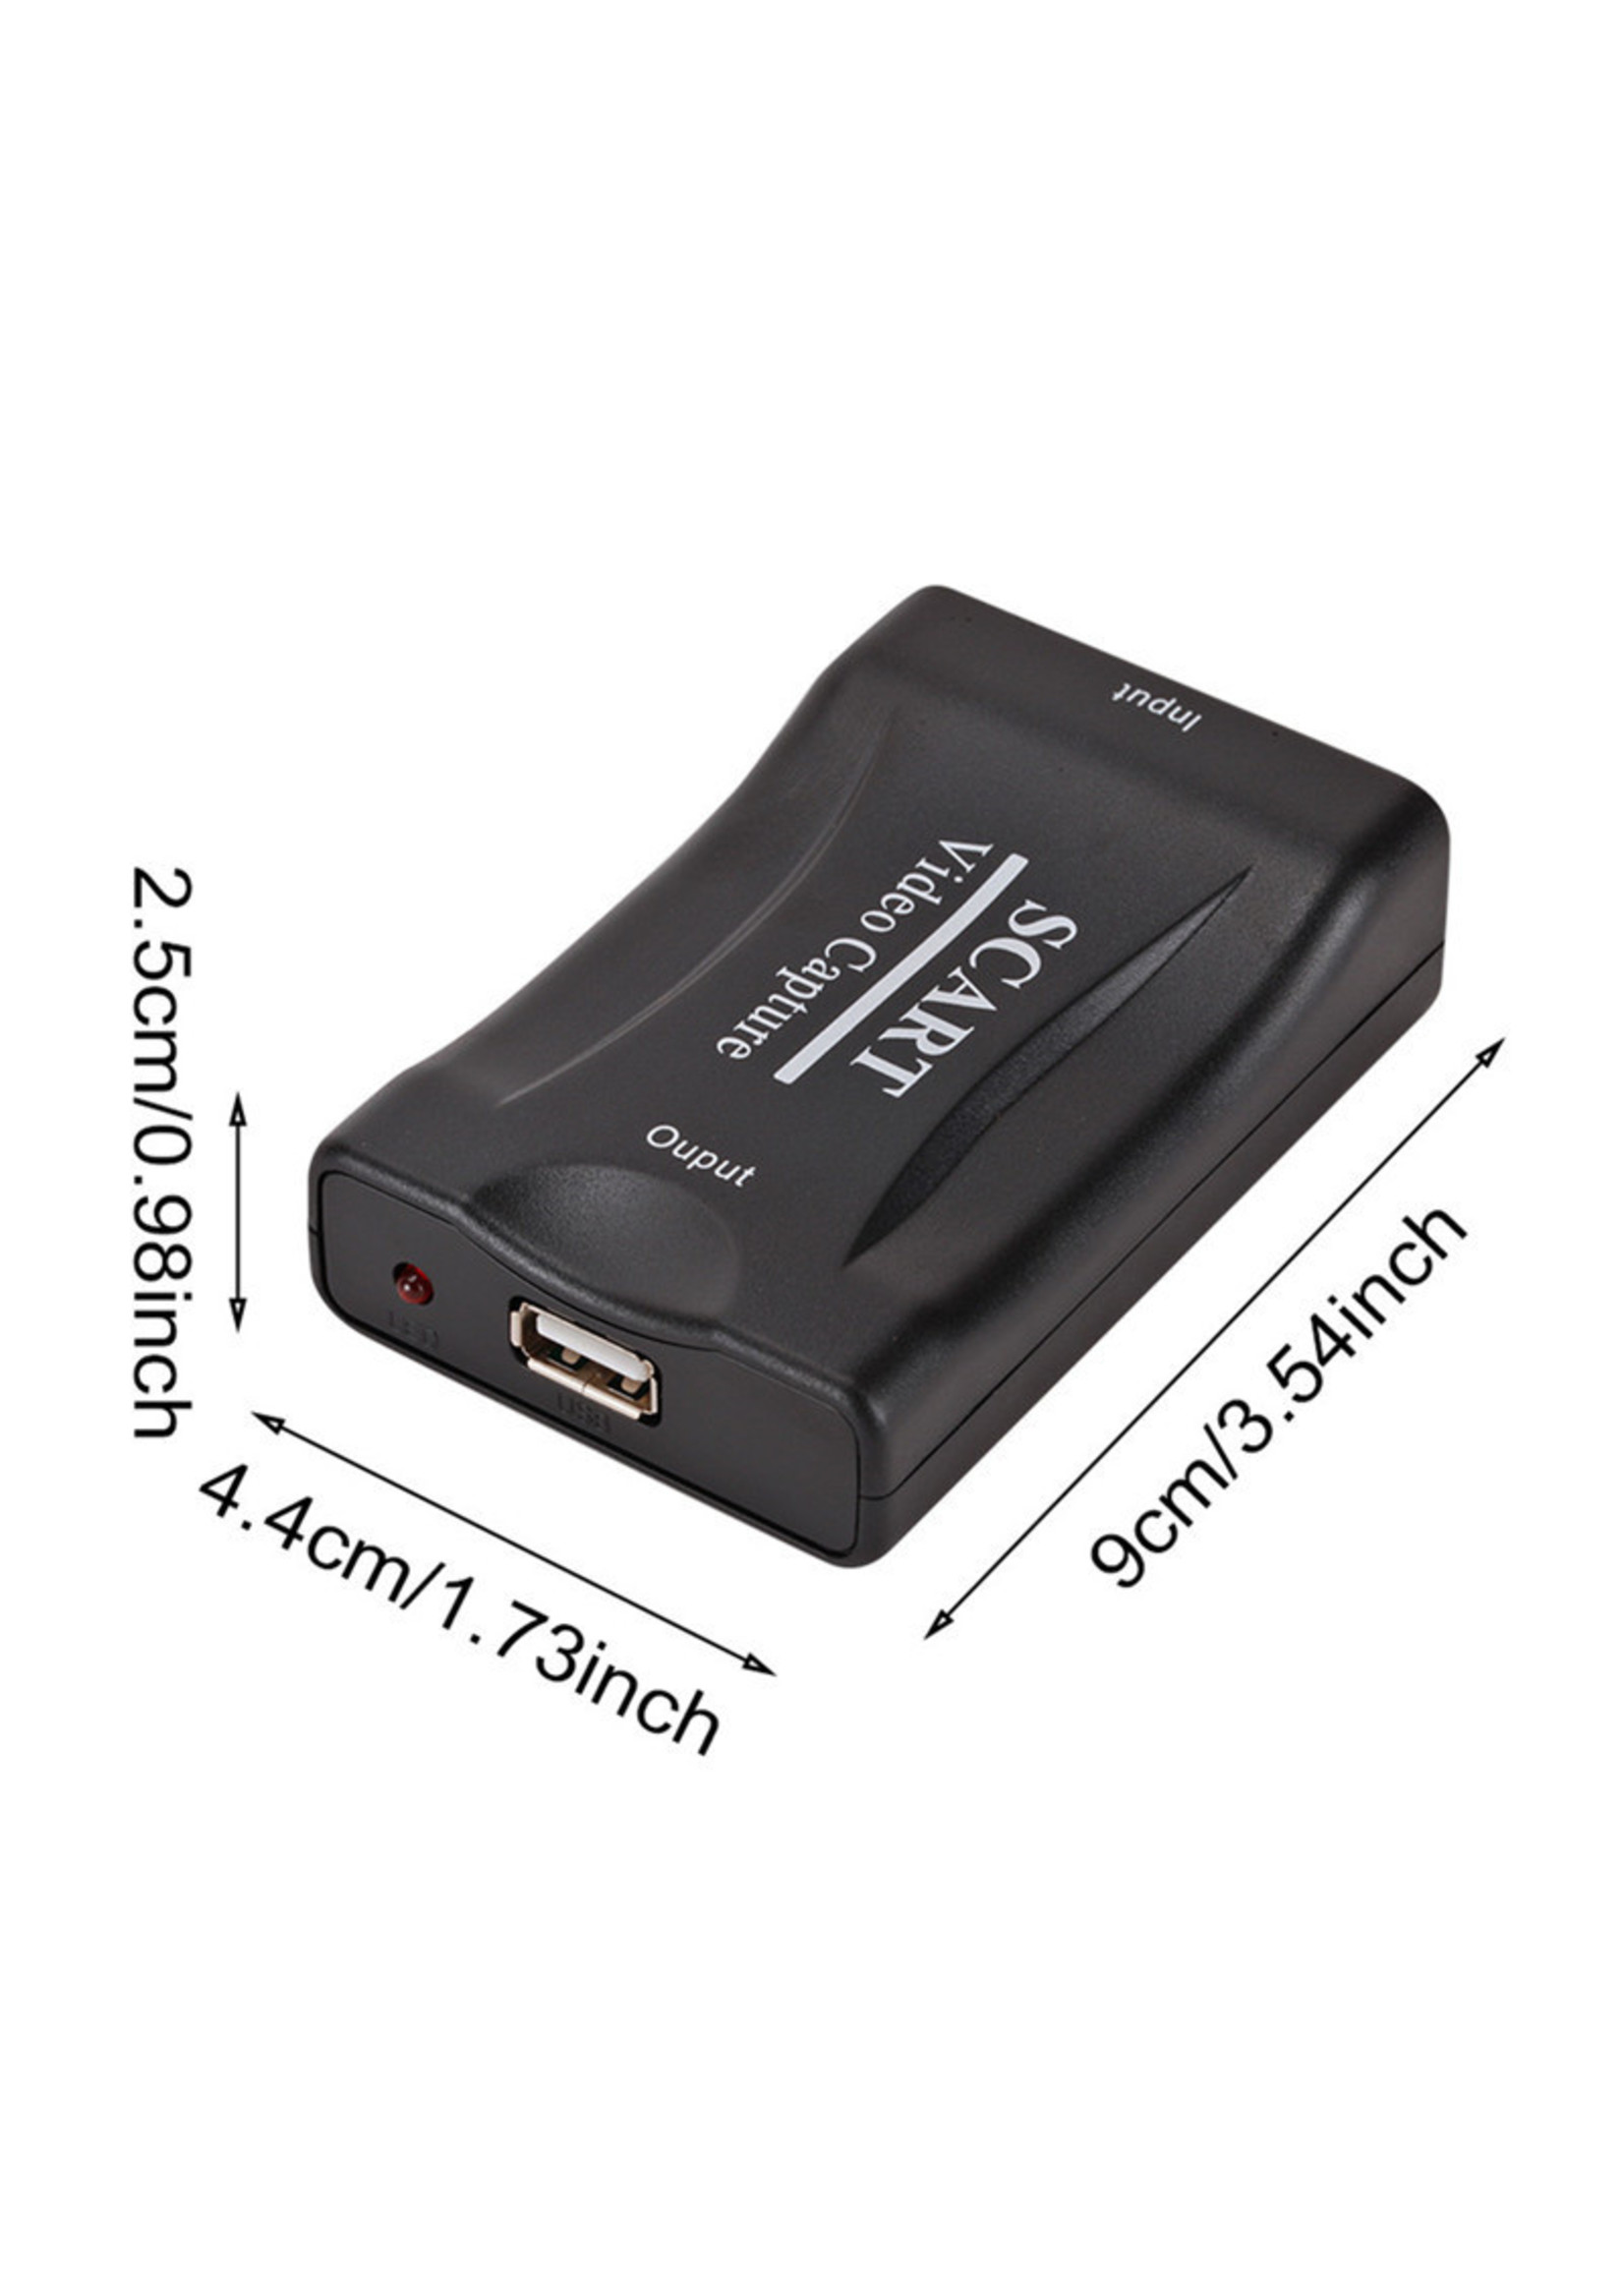 Dolphix SCART naar USB video capture adapter